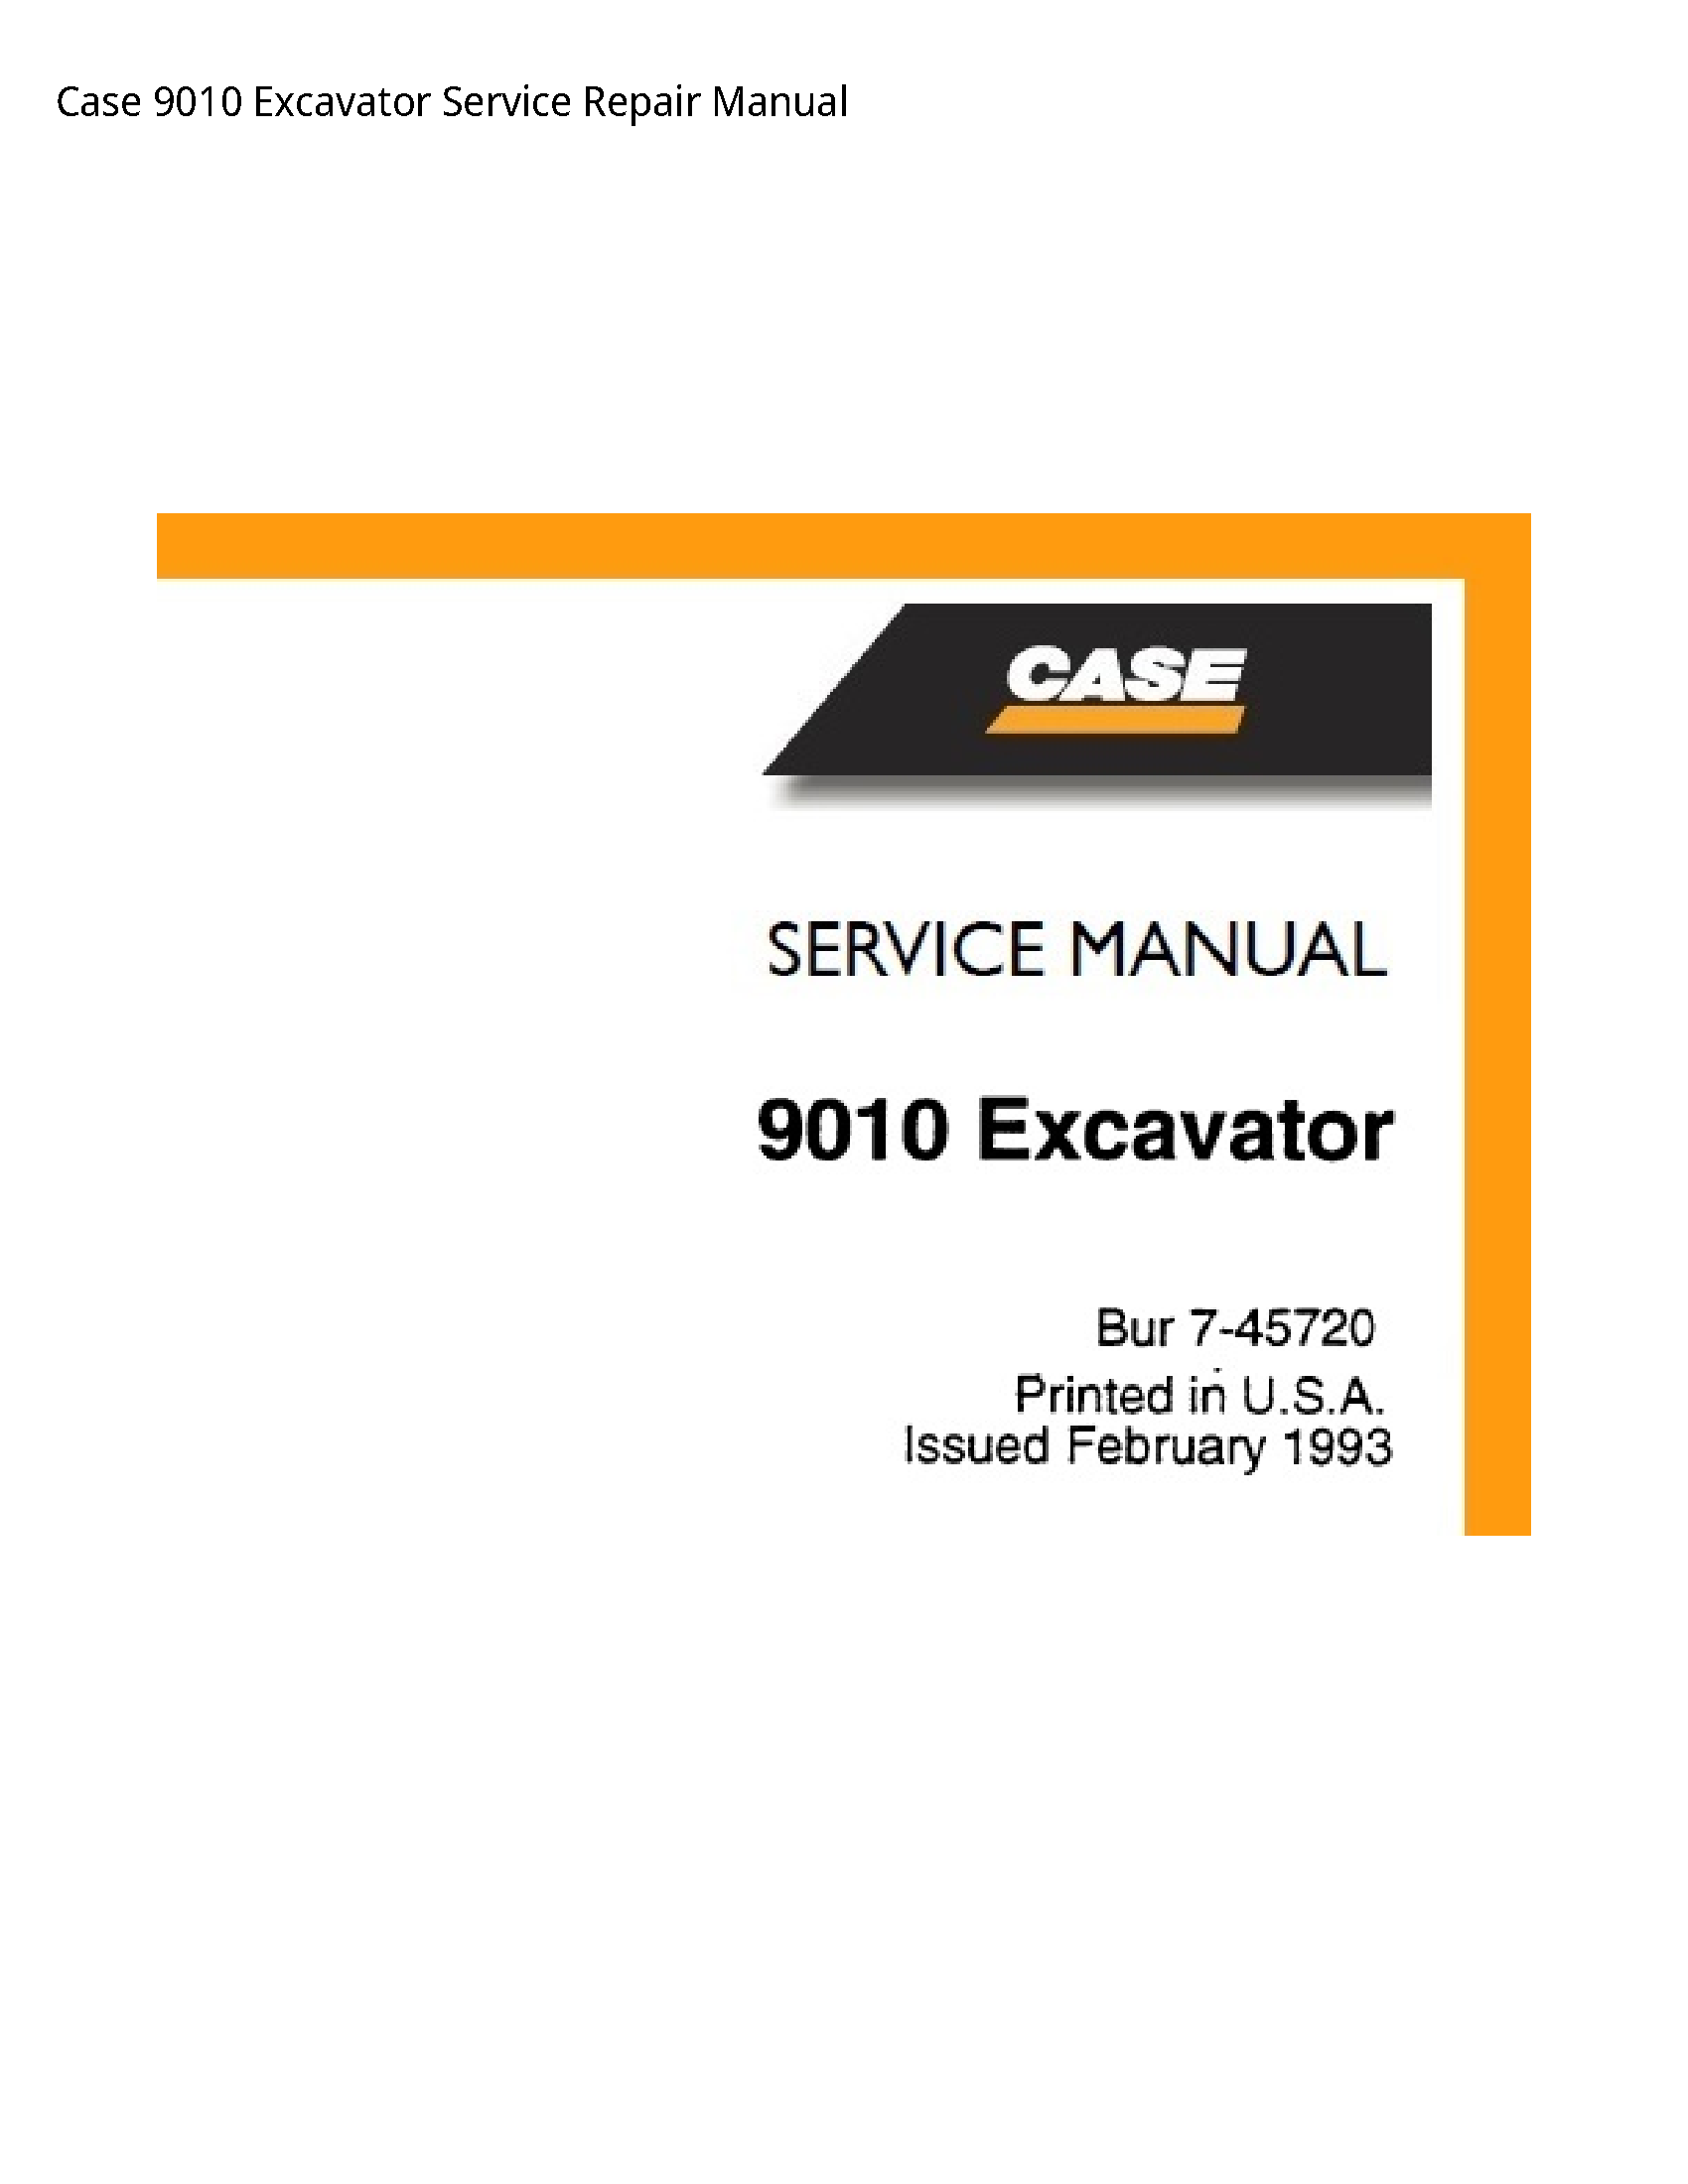 Case/Case IH 9010 Excavator manual